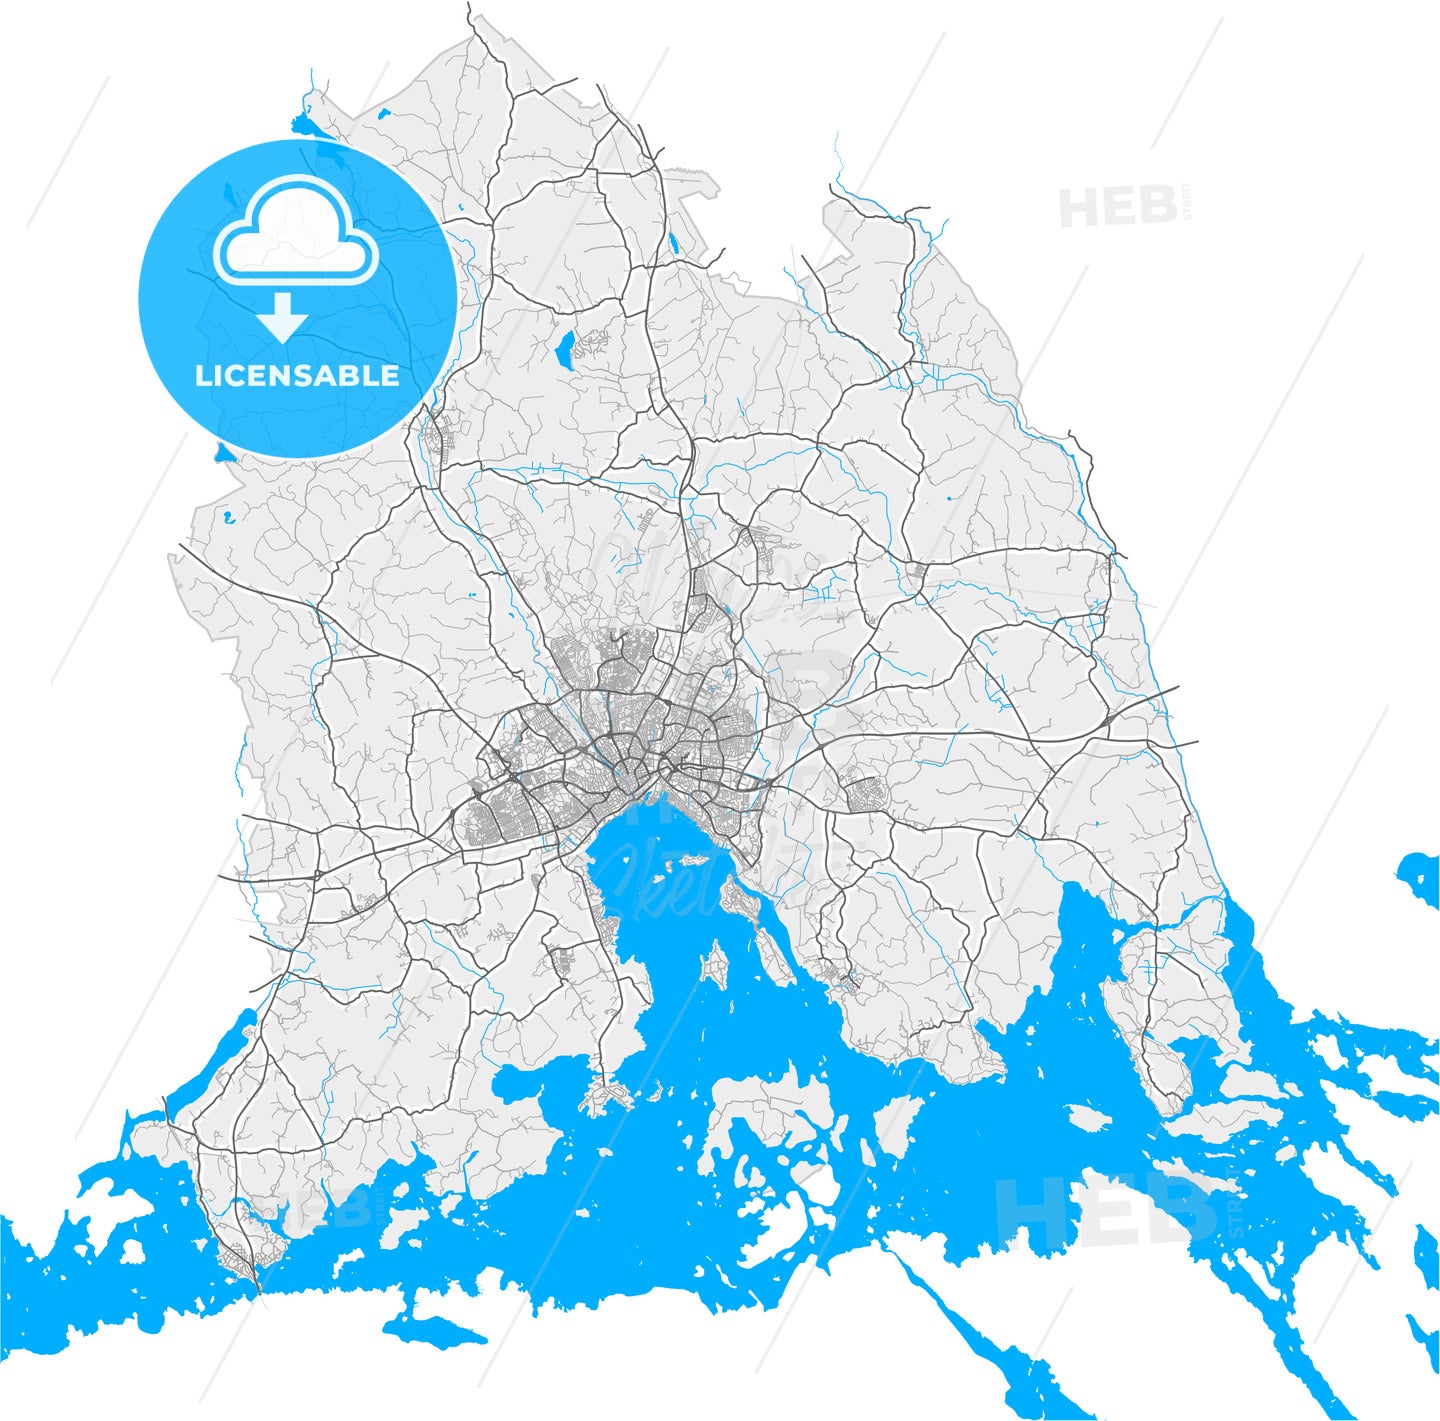 Västerås, Sweden, high quality vector map